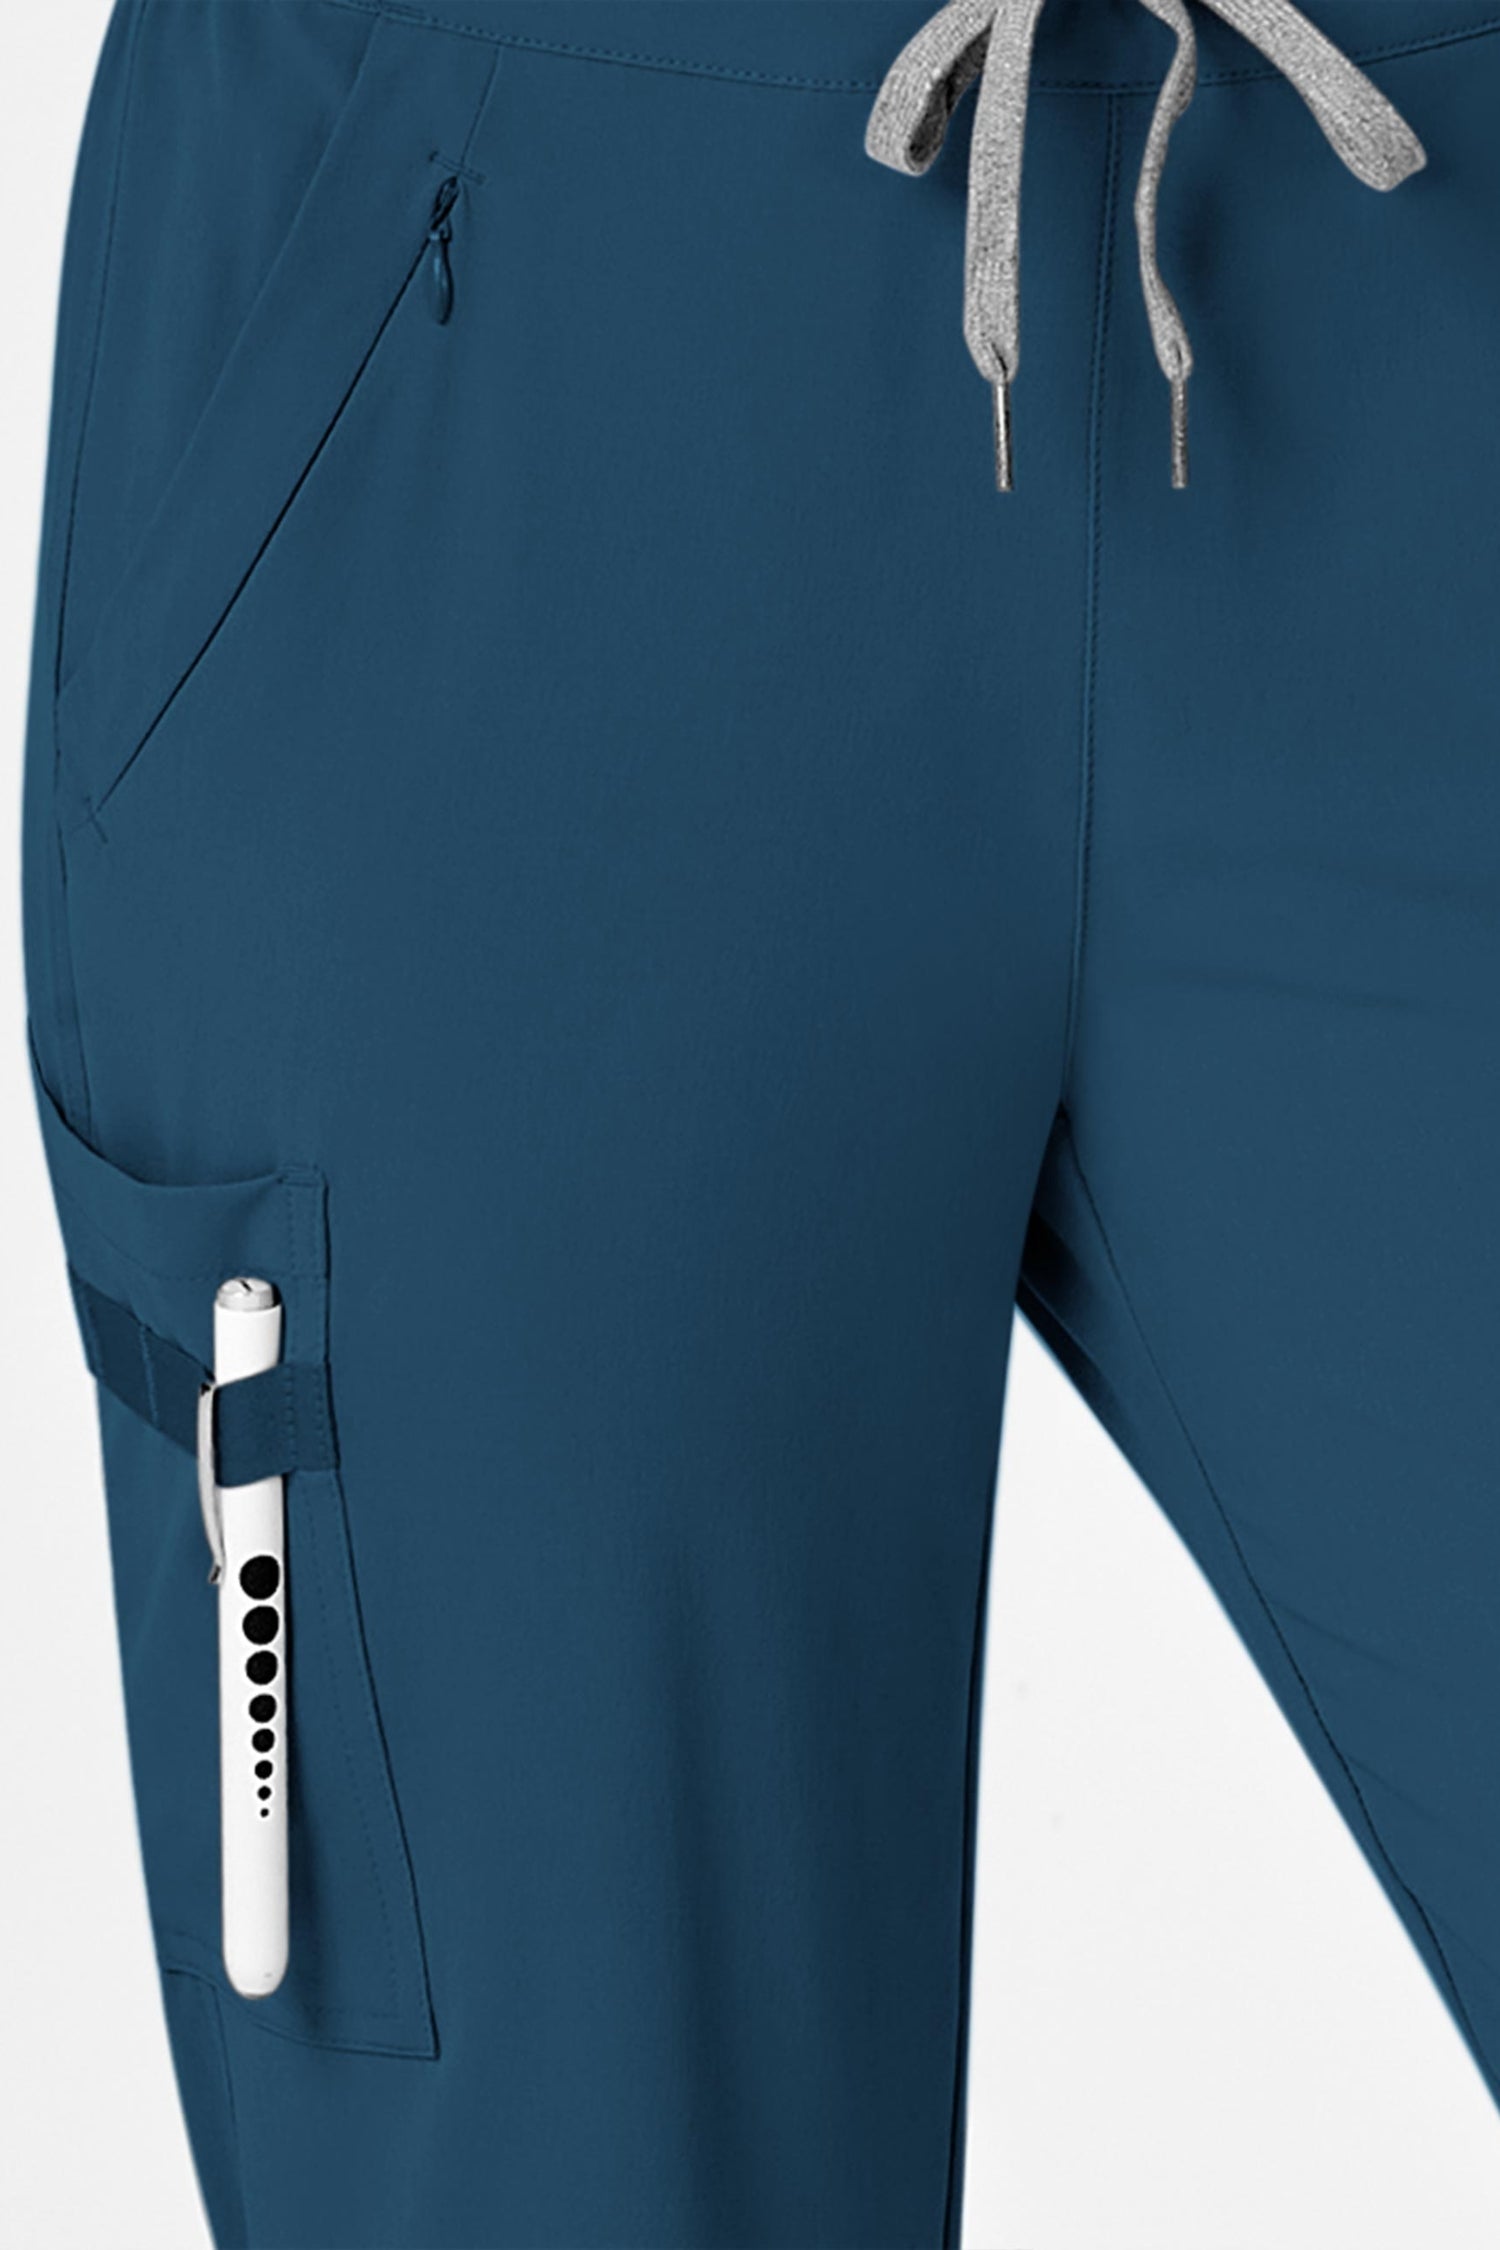 RENEW - Pantalon médical femme bleu turquoise avec coupe moderne et poches cargo